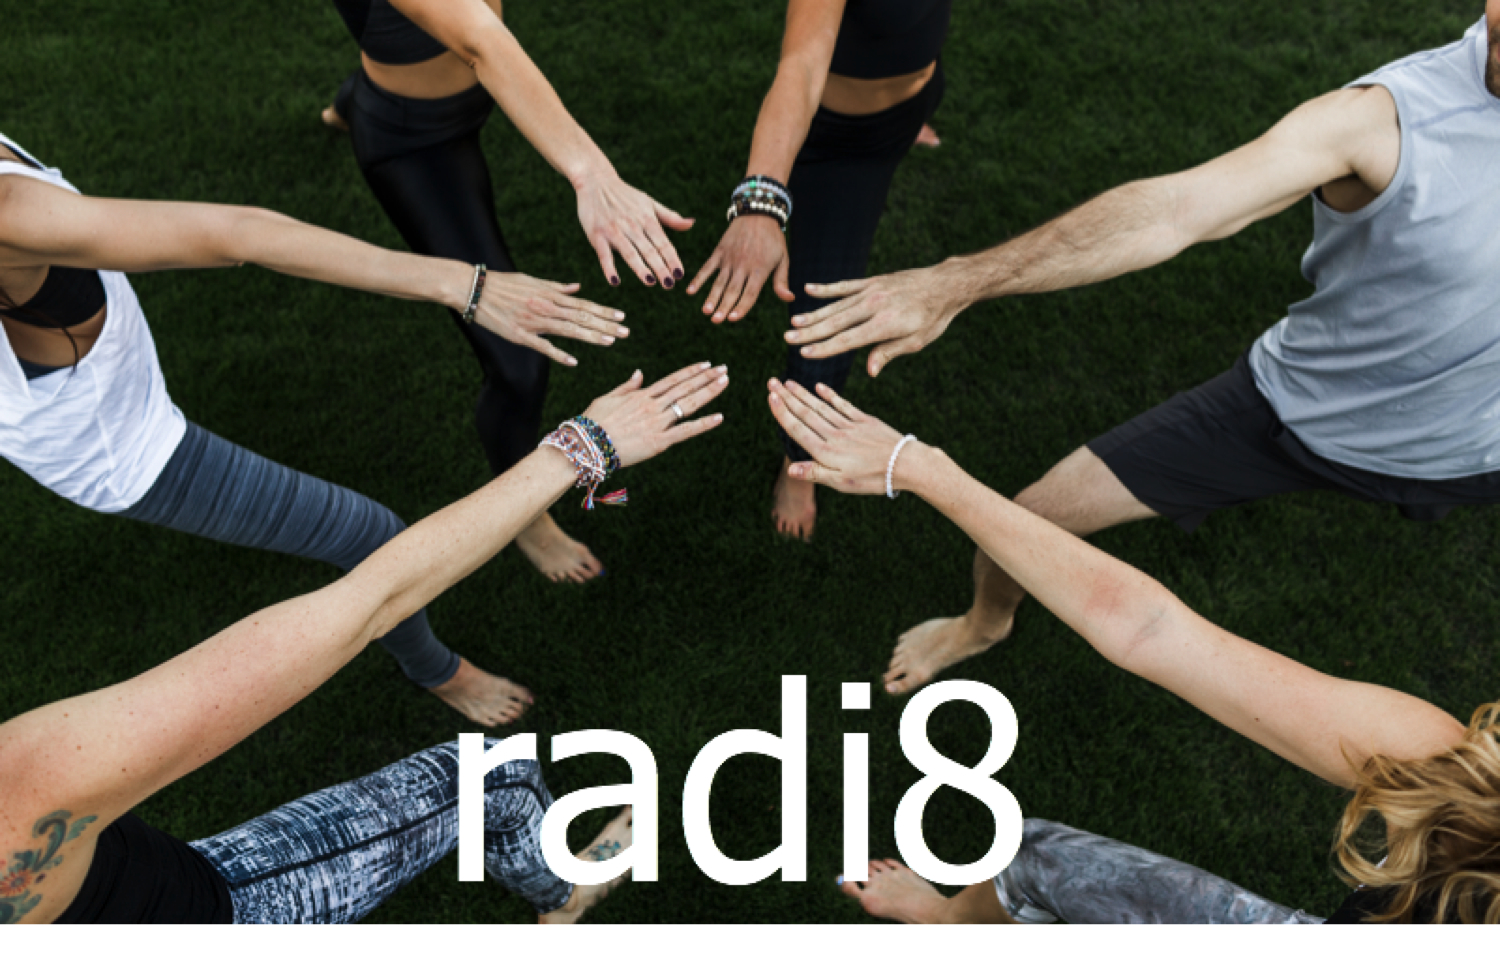 radi8 hot yoga